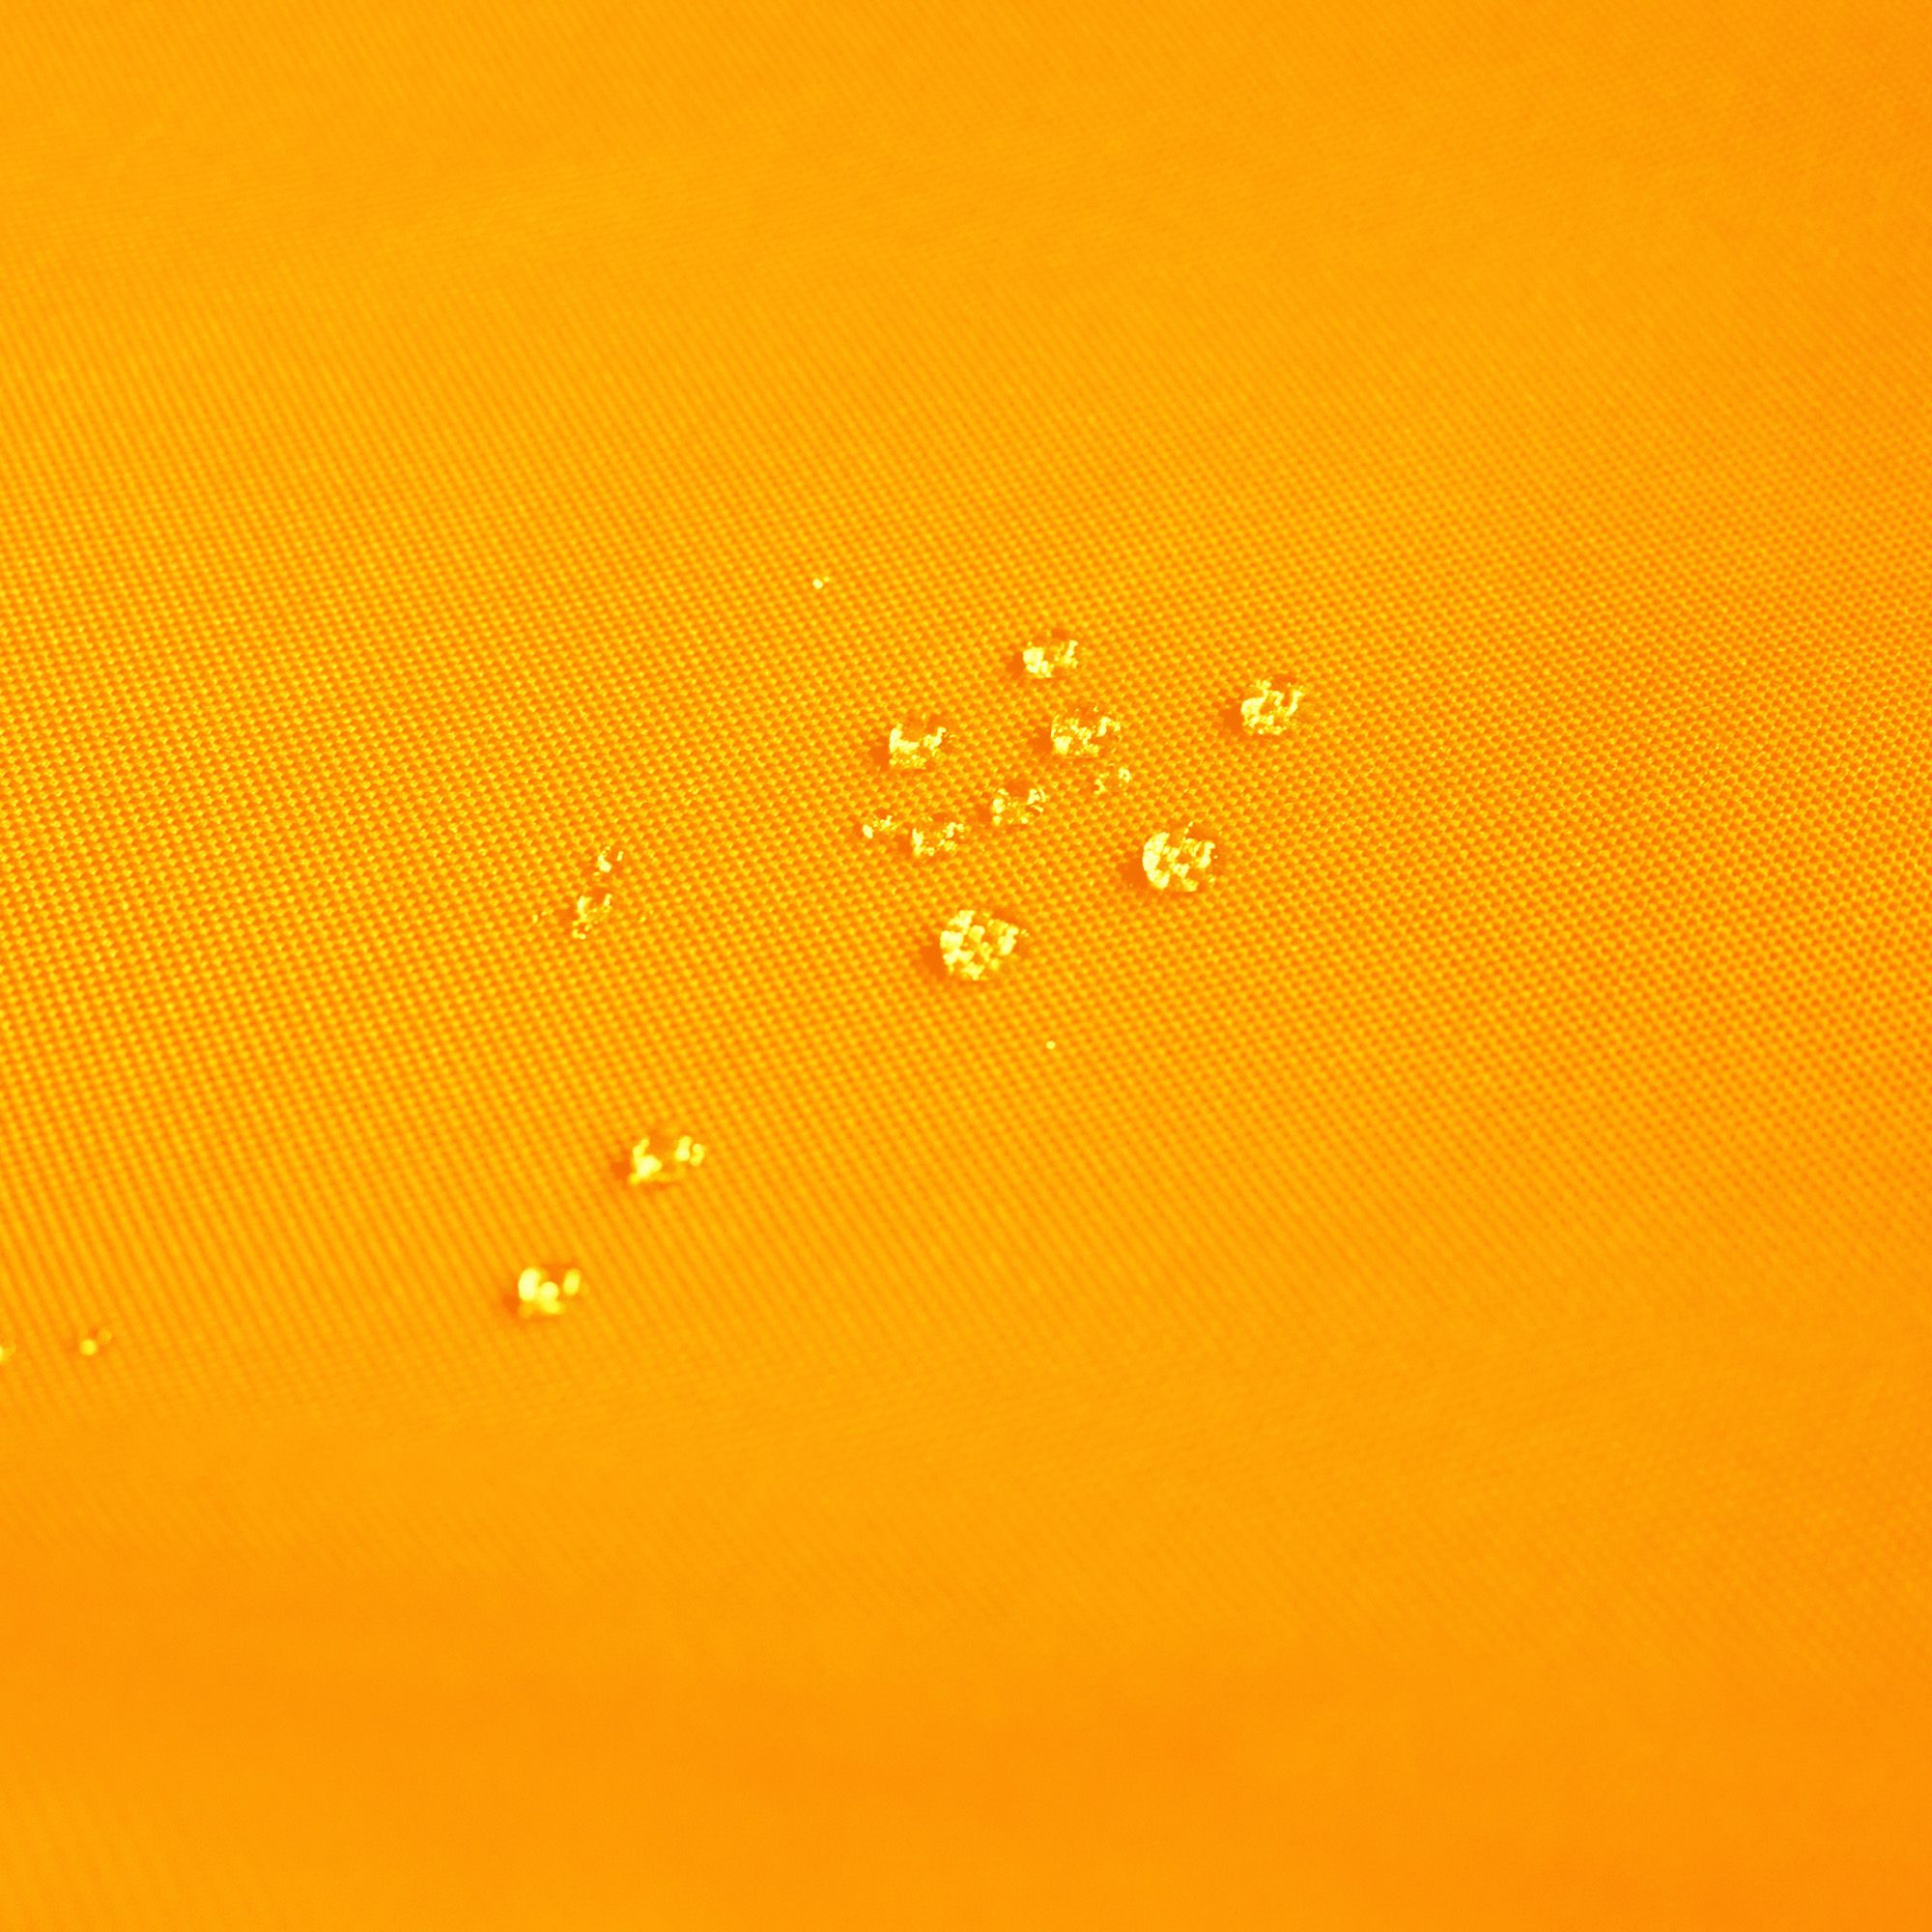 Čtvercový sedák oranžový nylon